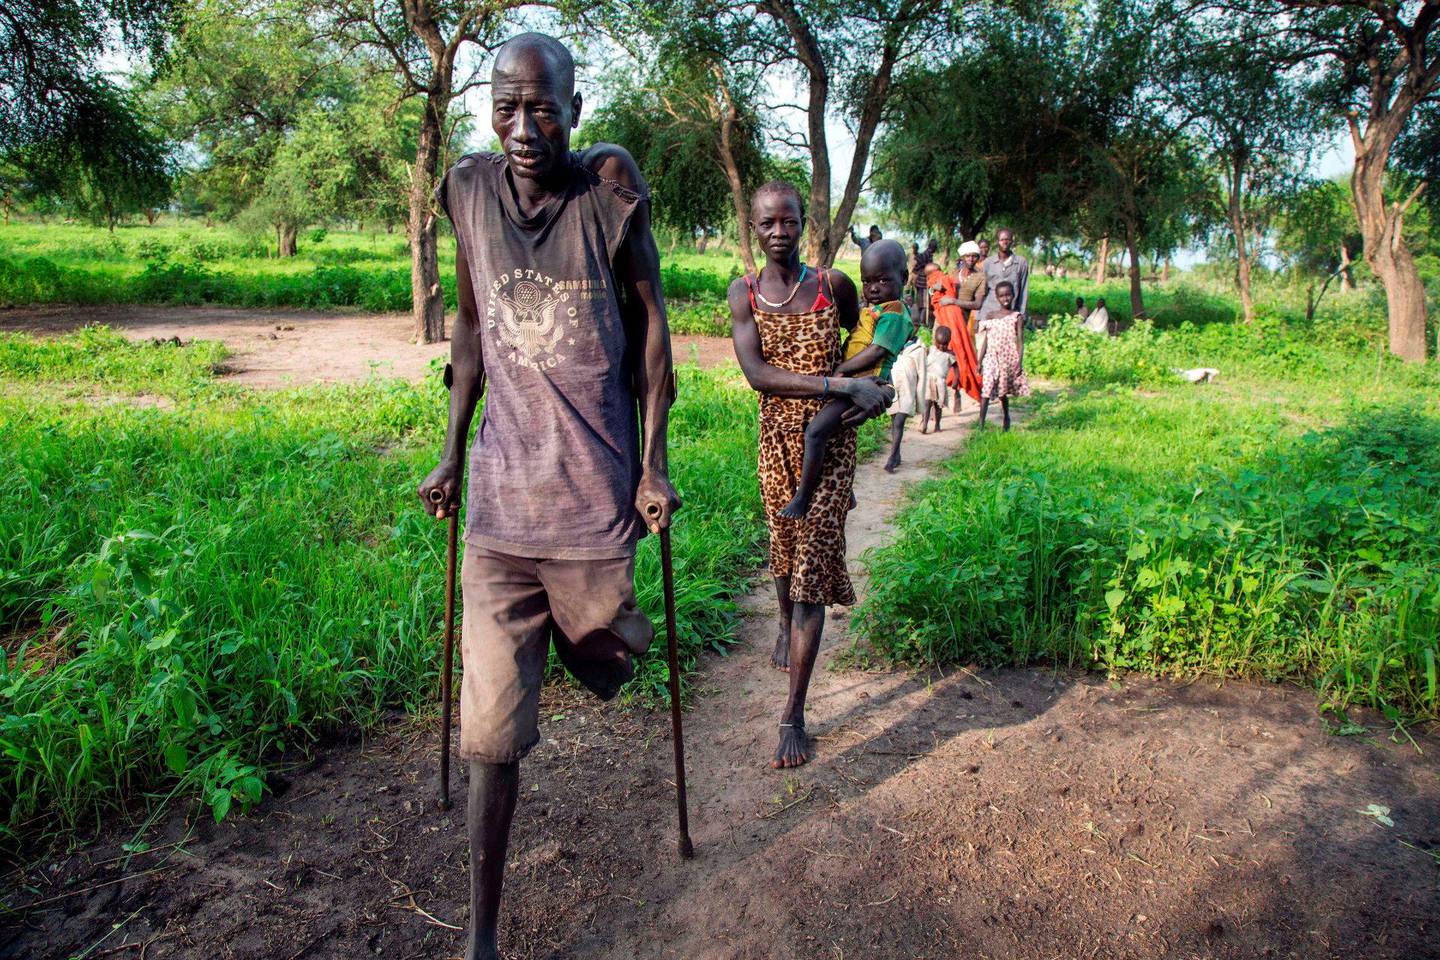 LIDELSER: Utgangspunktet var vanskelig da fattige Sør-Sudan ble en selvstendig stat i 2011. Nå er det enda verre, etter at fem år med borgerkrig har påført sivile enorme lidelser. Her internt fordrevne på flukt i Jonglei i Sør-Sudan i 2017. FOTO: ALBERT GONZALES FARRAN/NTB SCANPIX